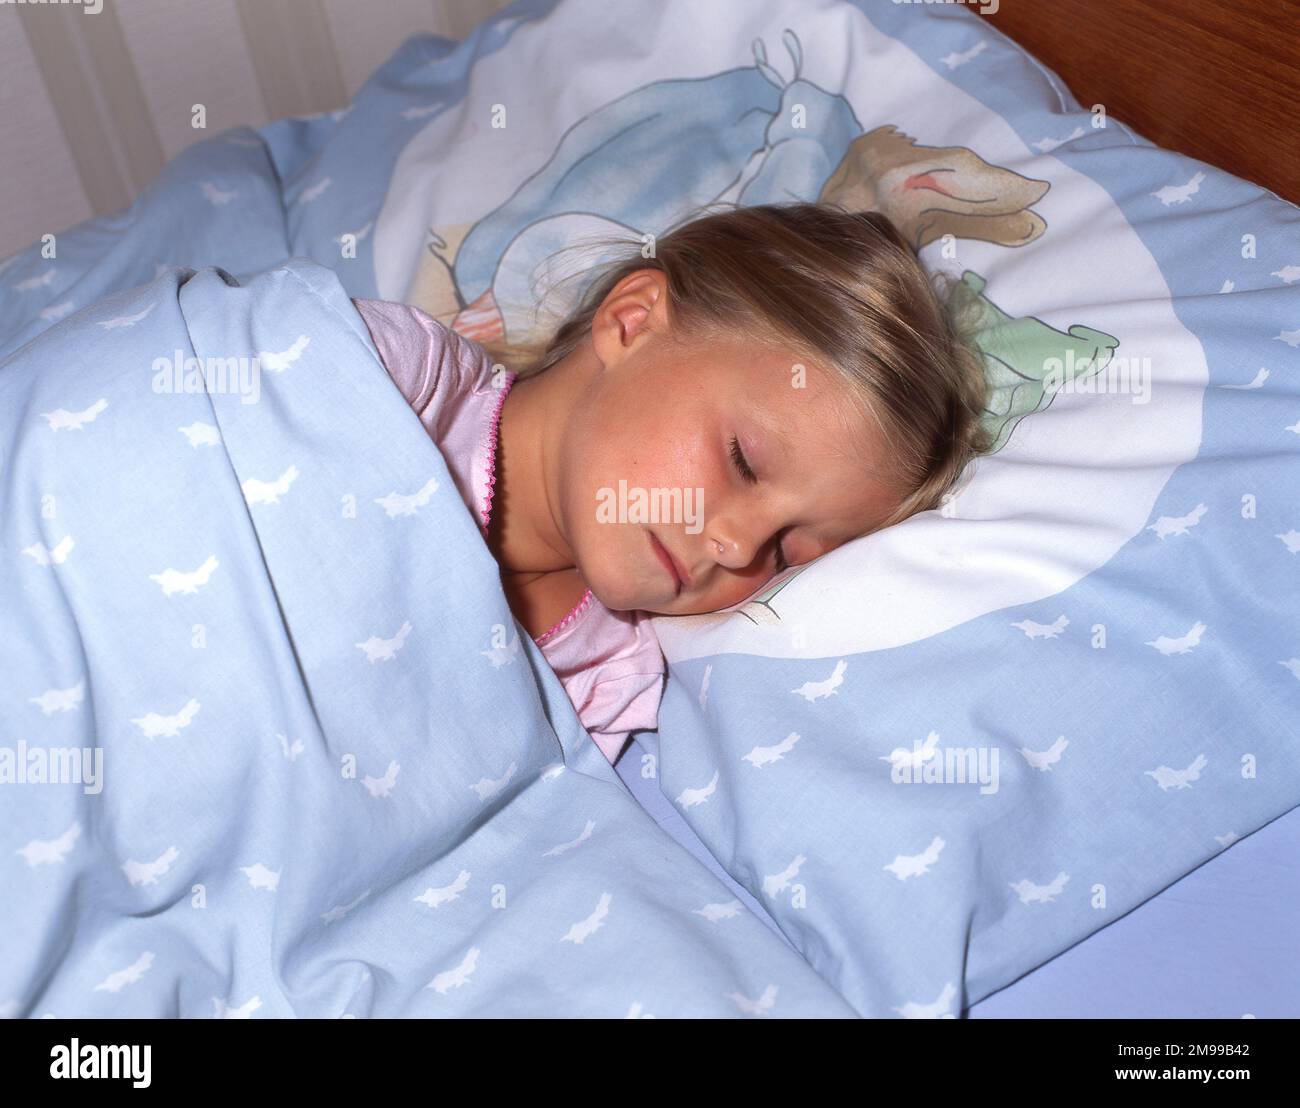 Jeune fille endormi dans le lit, Winkfield, Berkshire, Angleterre, Royaume-Uni Banque D'Images